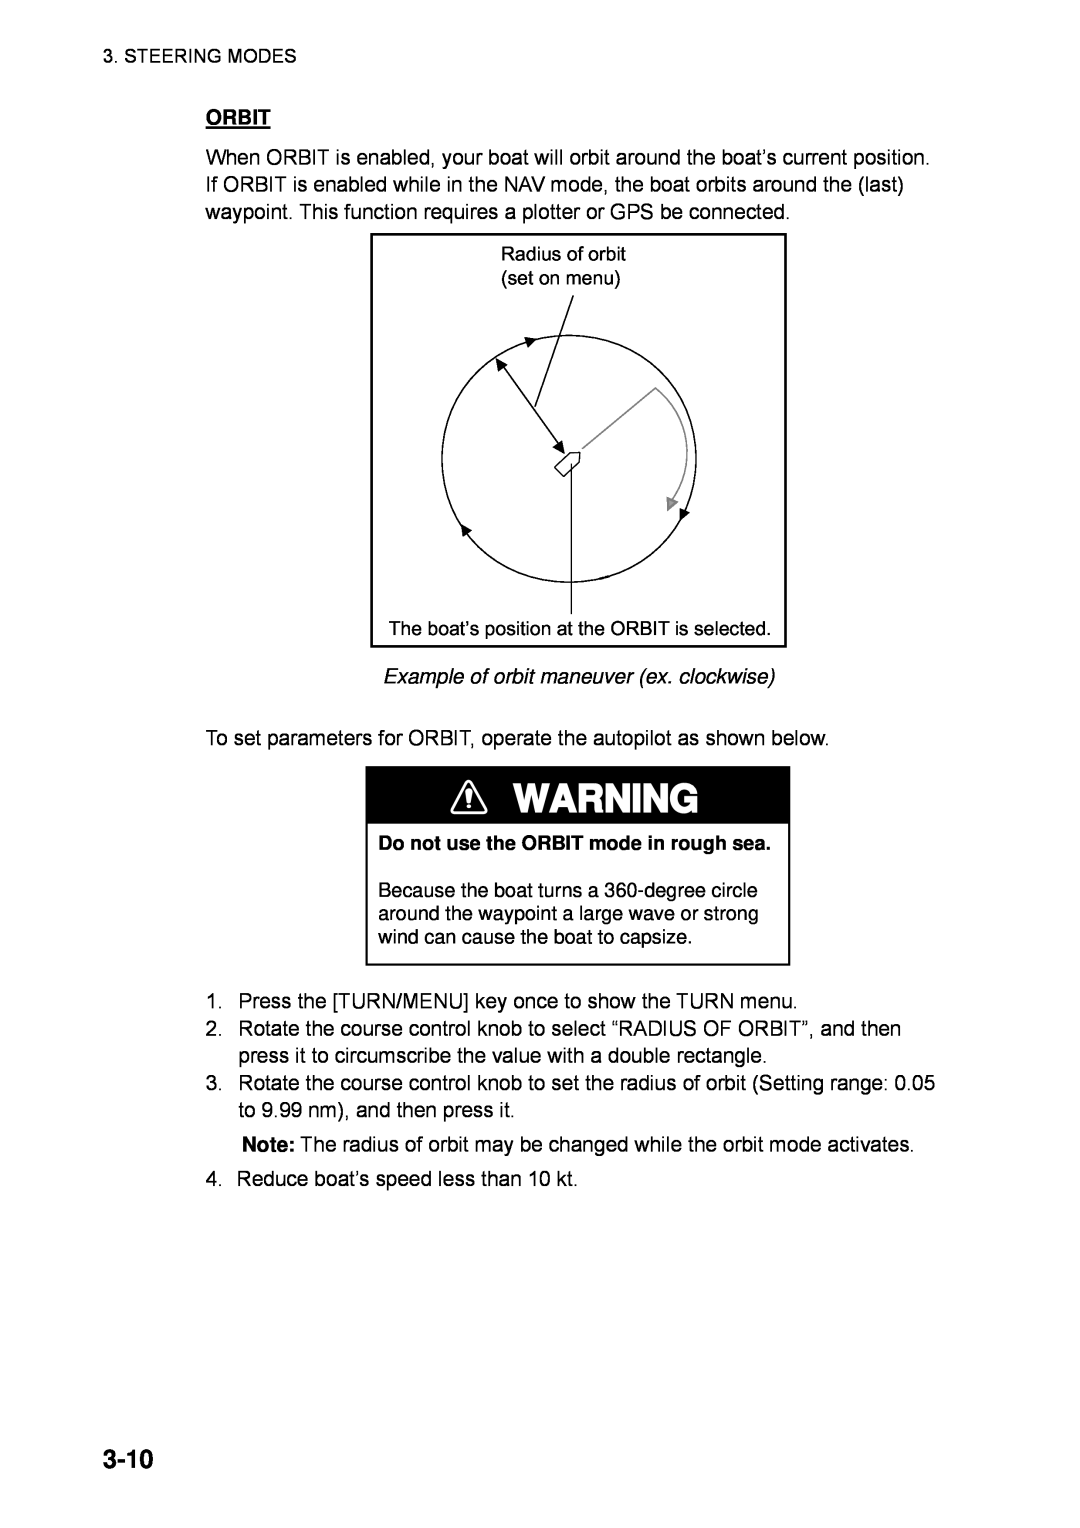 Furuno 611, 511, 520 manual 3-10, Orbit, Example of orbit maneuver ex. clockwise, Do not use the ORBIT mode in rough sea 